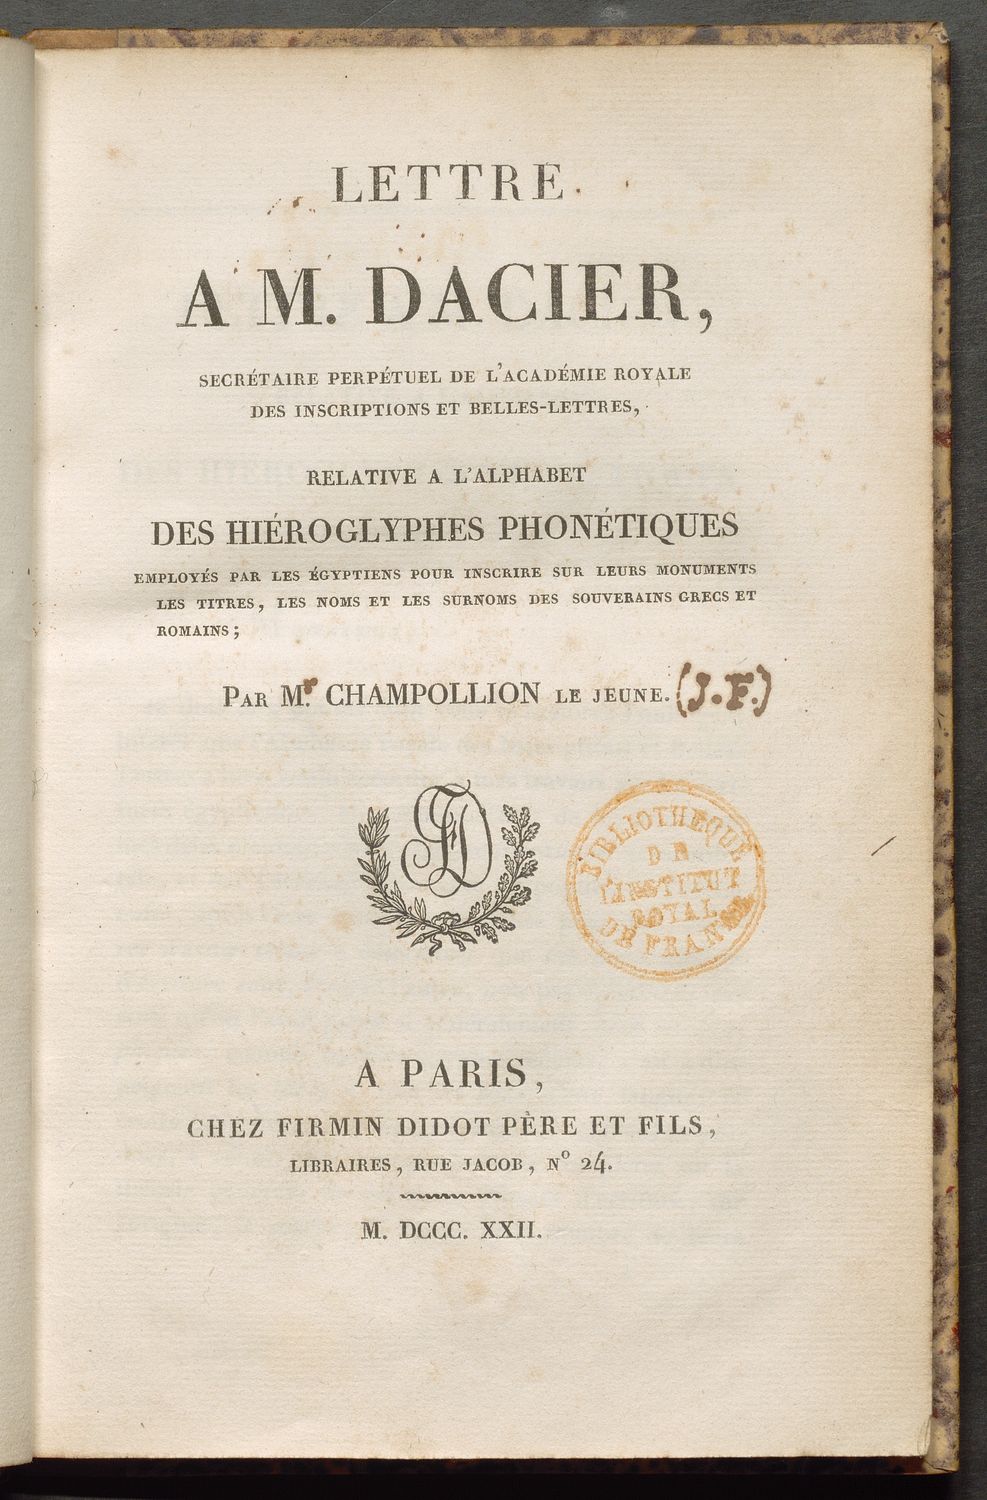 Lettre à M. Dacier par J.-F. Champollion le jeune (p. titre)